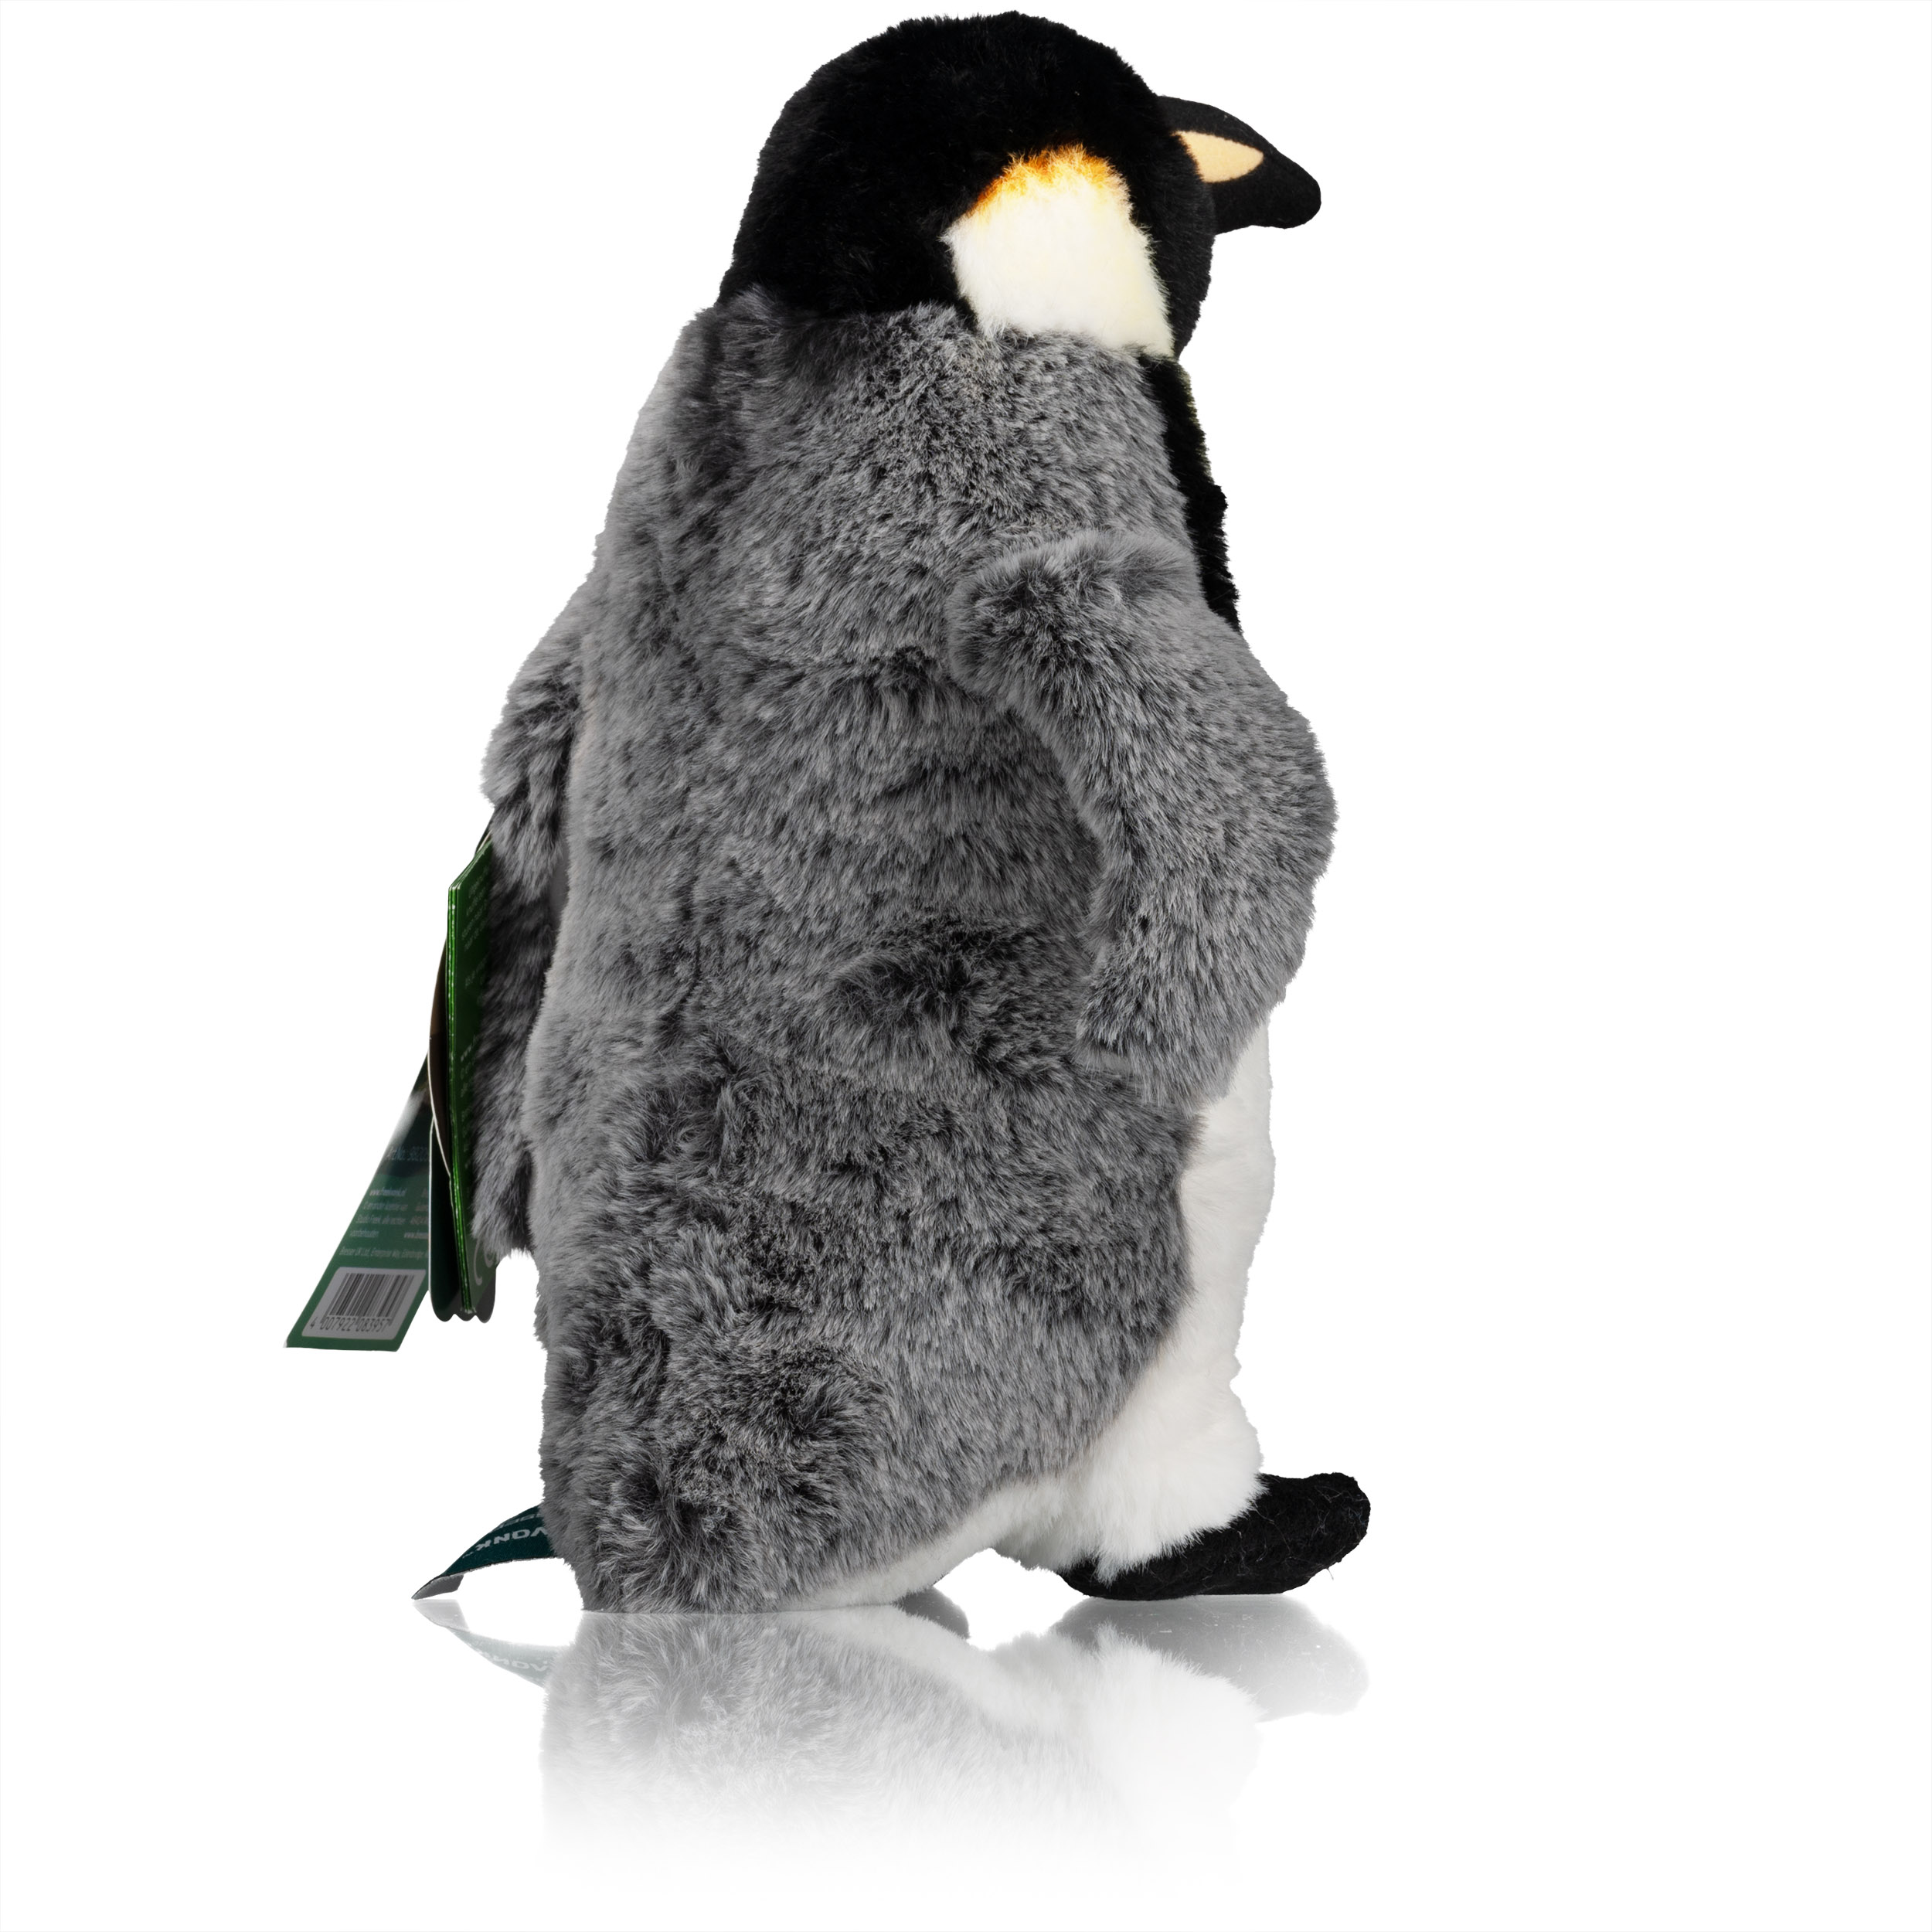 FREEK VONK x BRESSER Pinguin Peppie